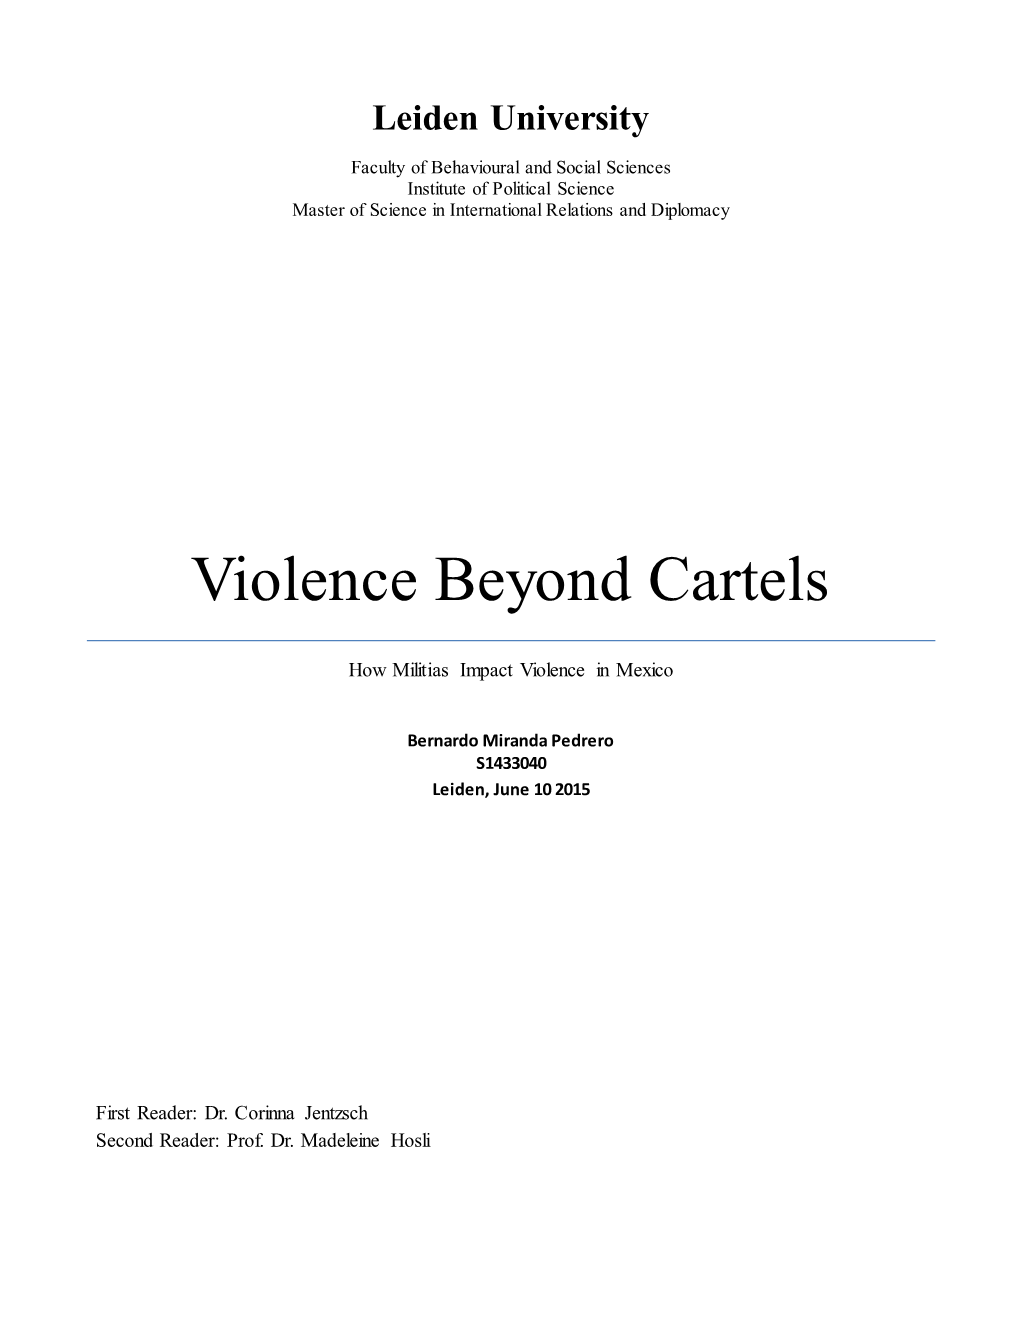 Violence Beyond Cartels